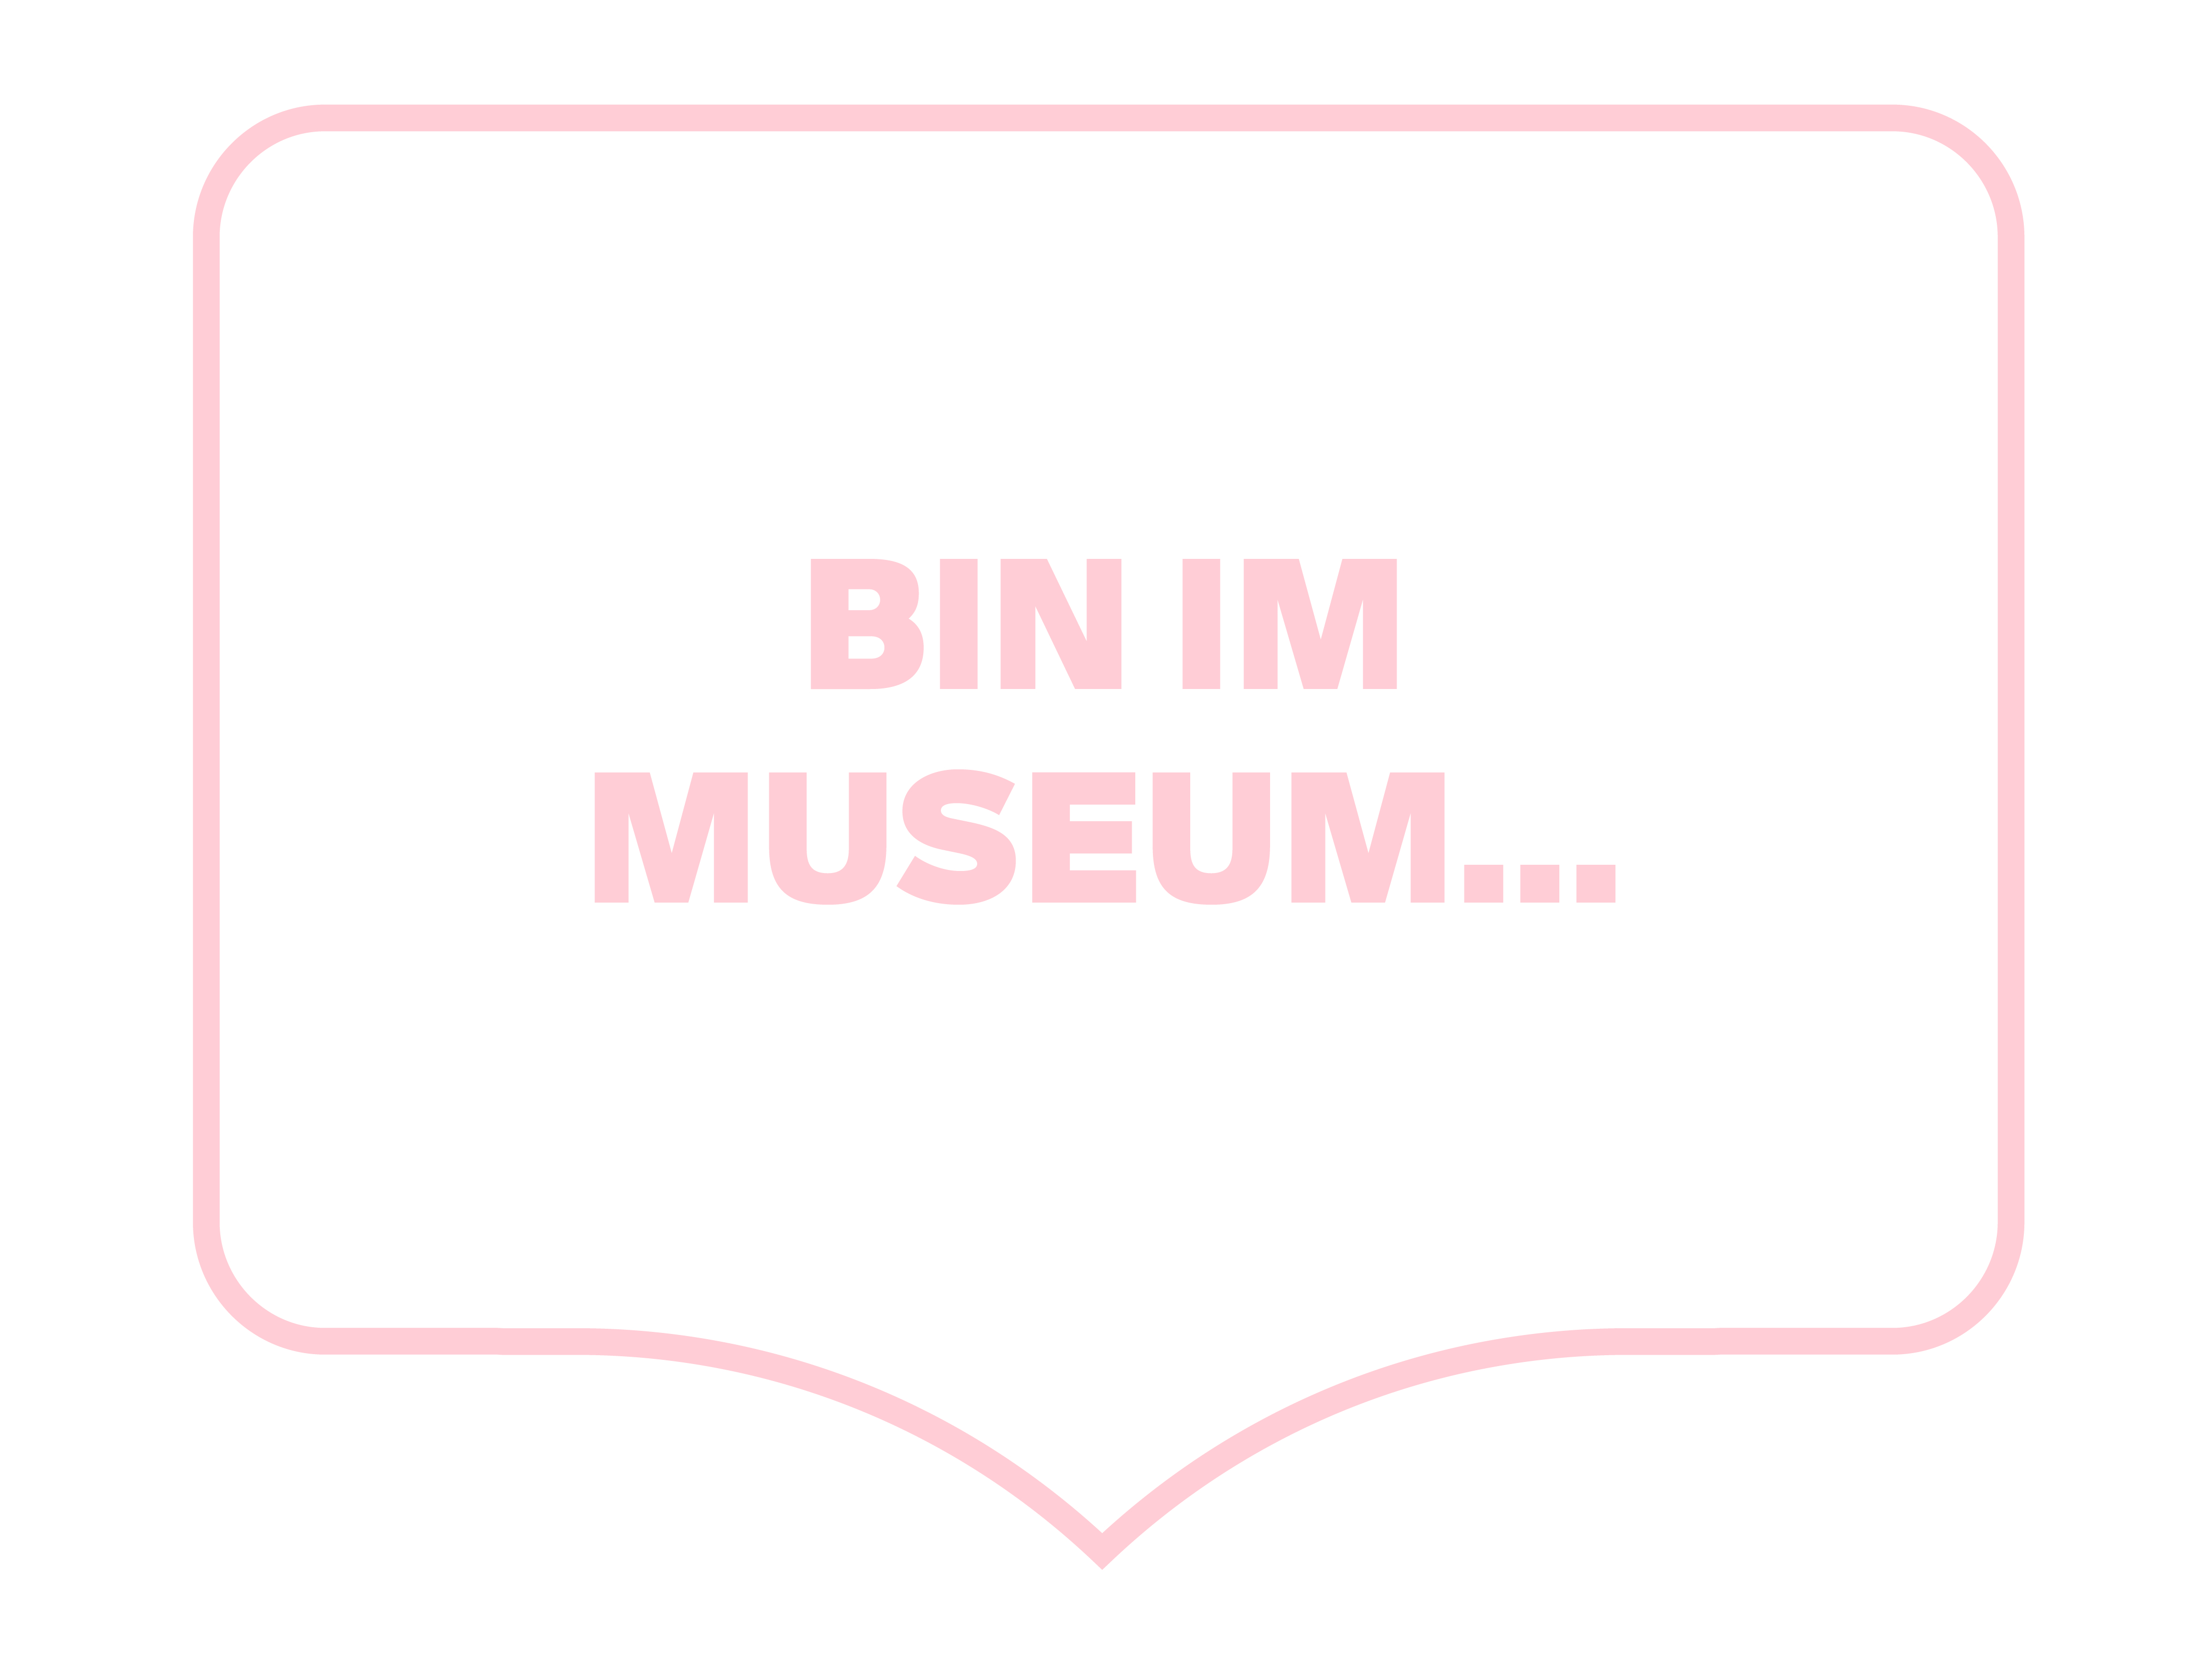 Bin im Museum